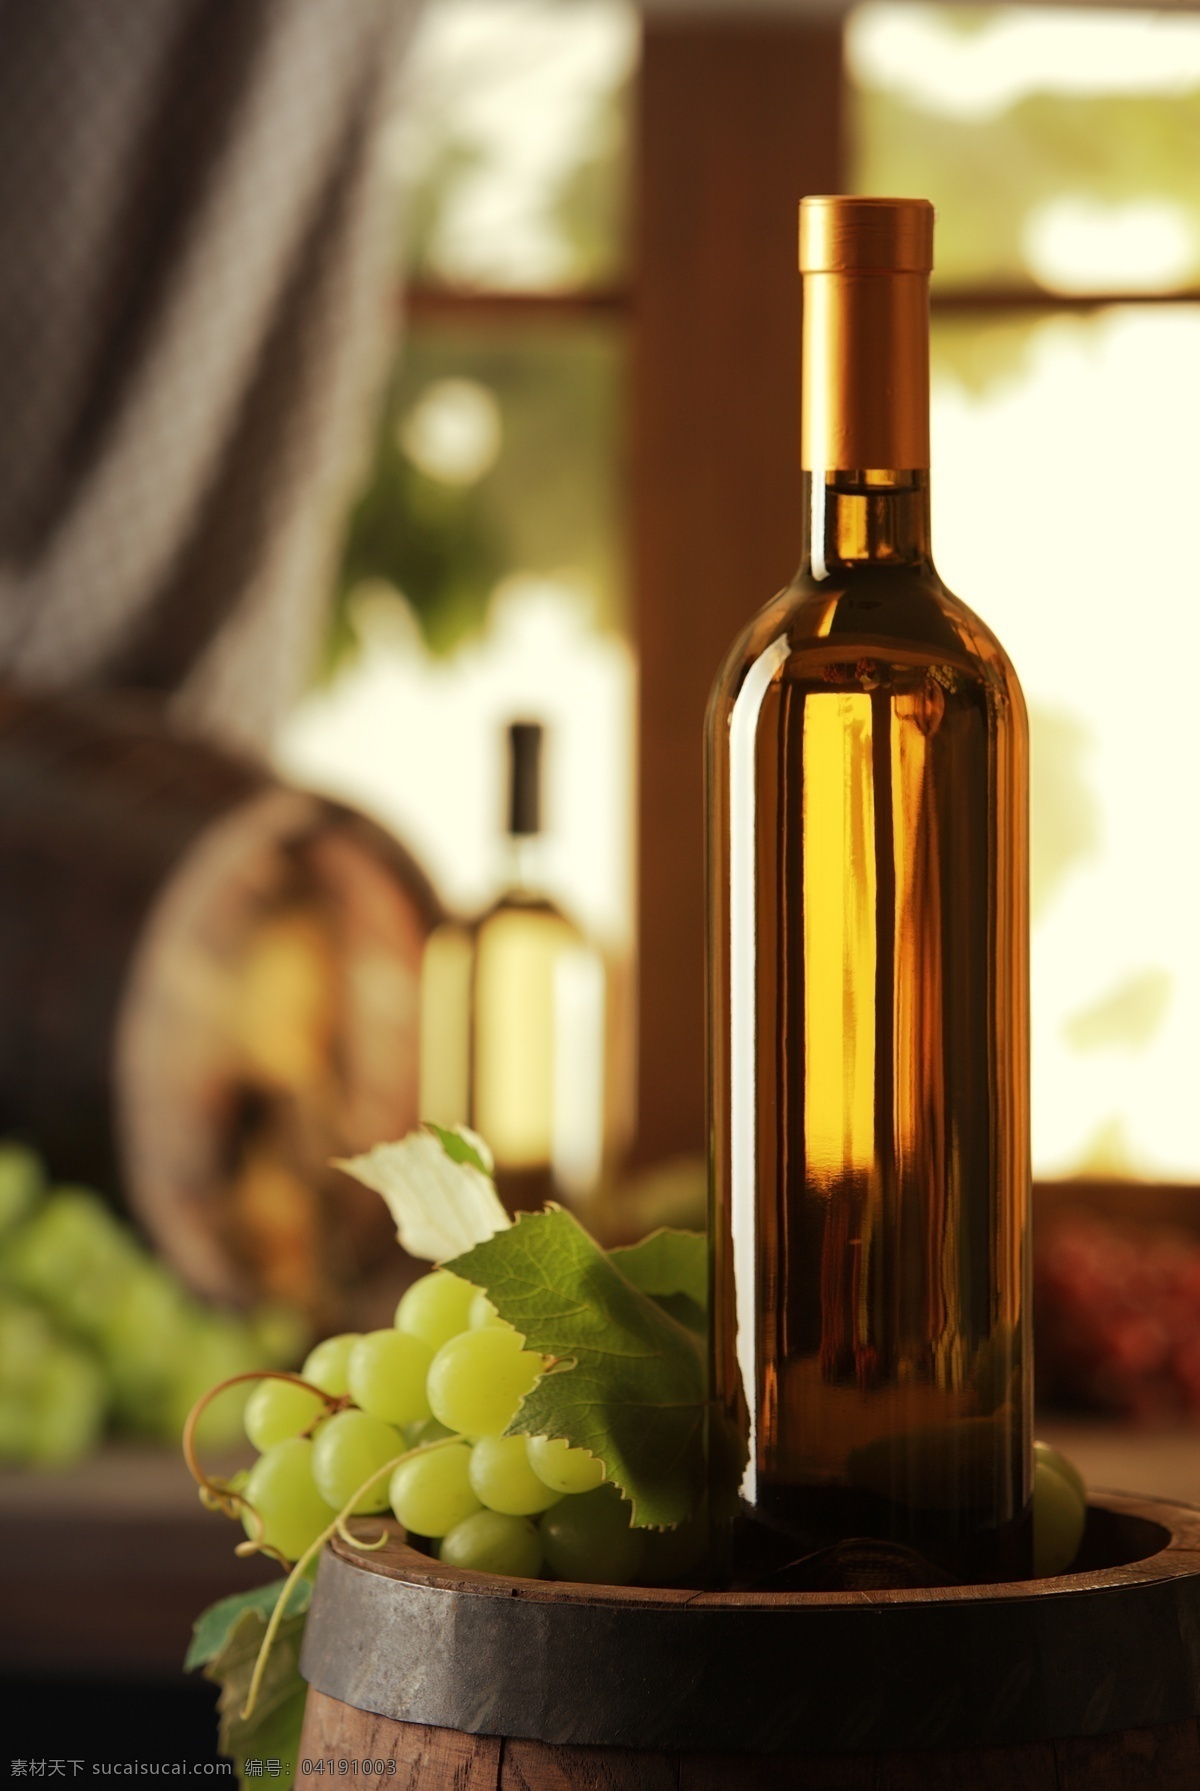 葡萄 酒桶 上 酒瓶 梦幻背景 葡萄酒 水果 玻璃杯 酒类图片 餐饮美食